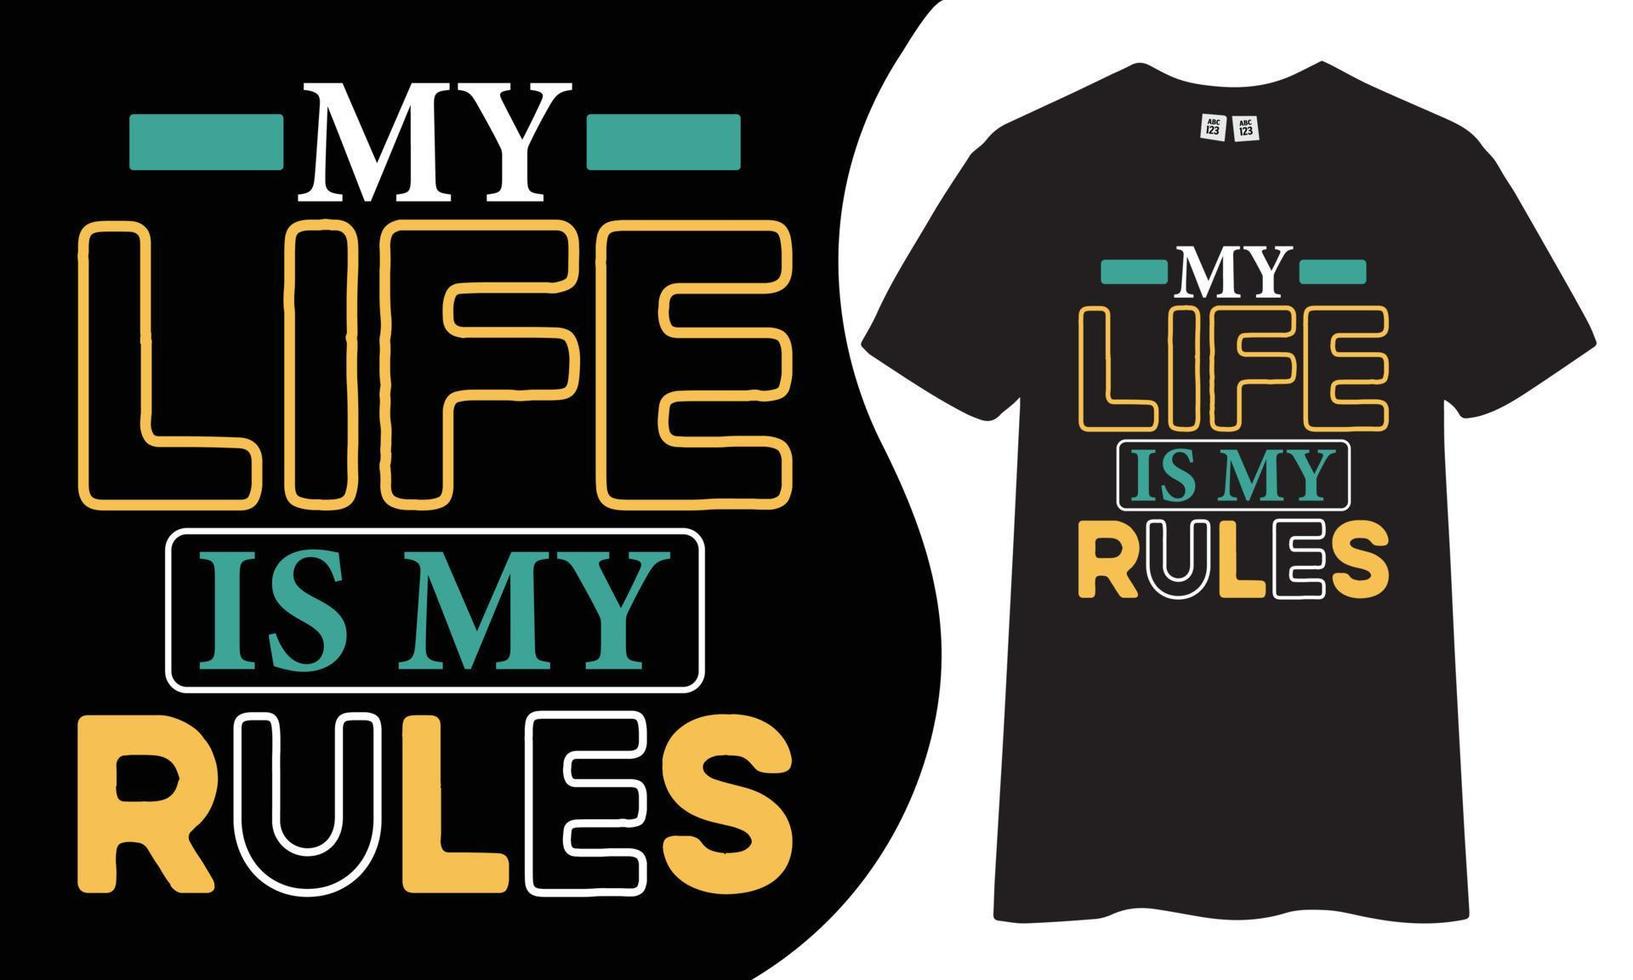 conception de t-shirt motivante et inspirante. ma vie est mes règles cite la conception de t-shirt. vecteur